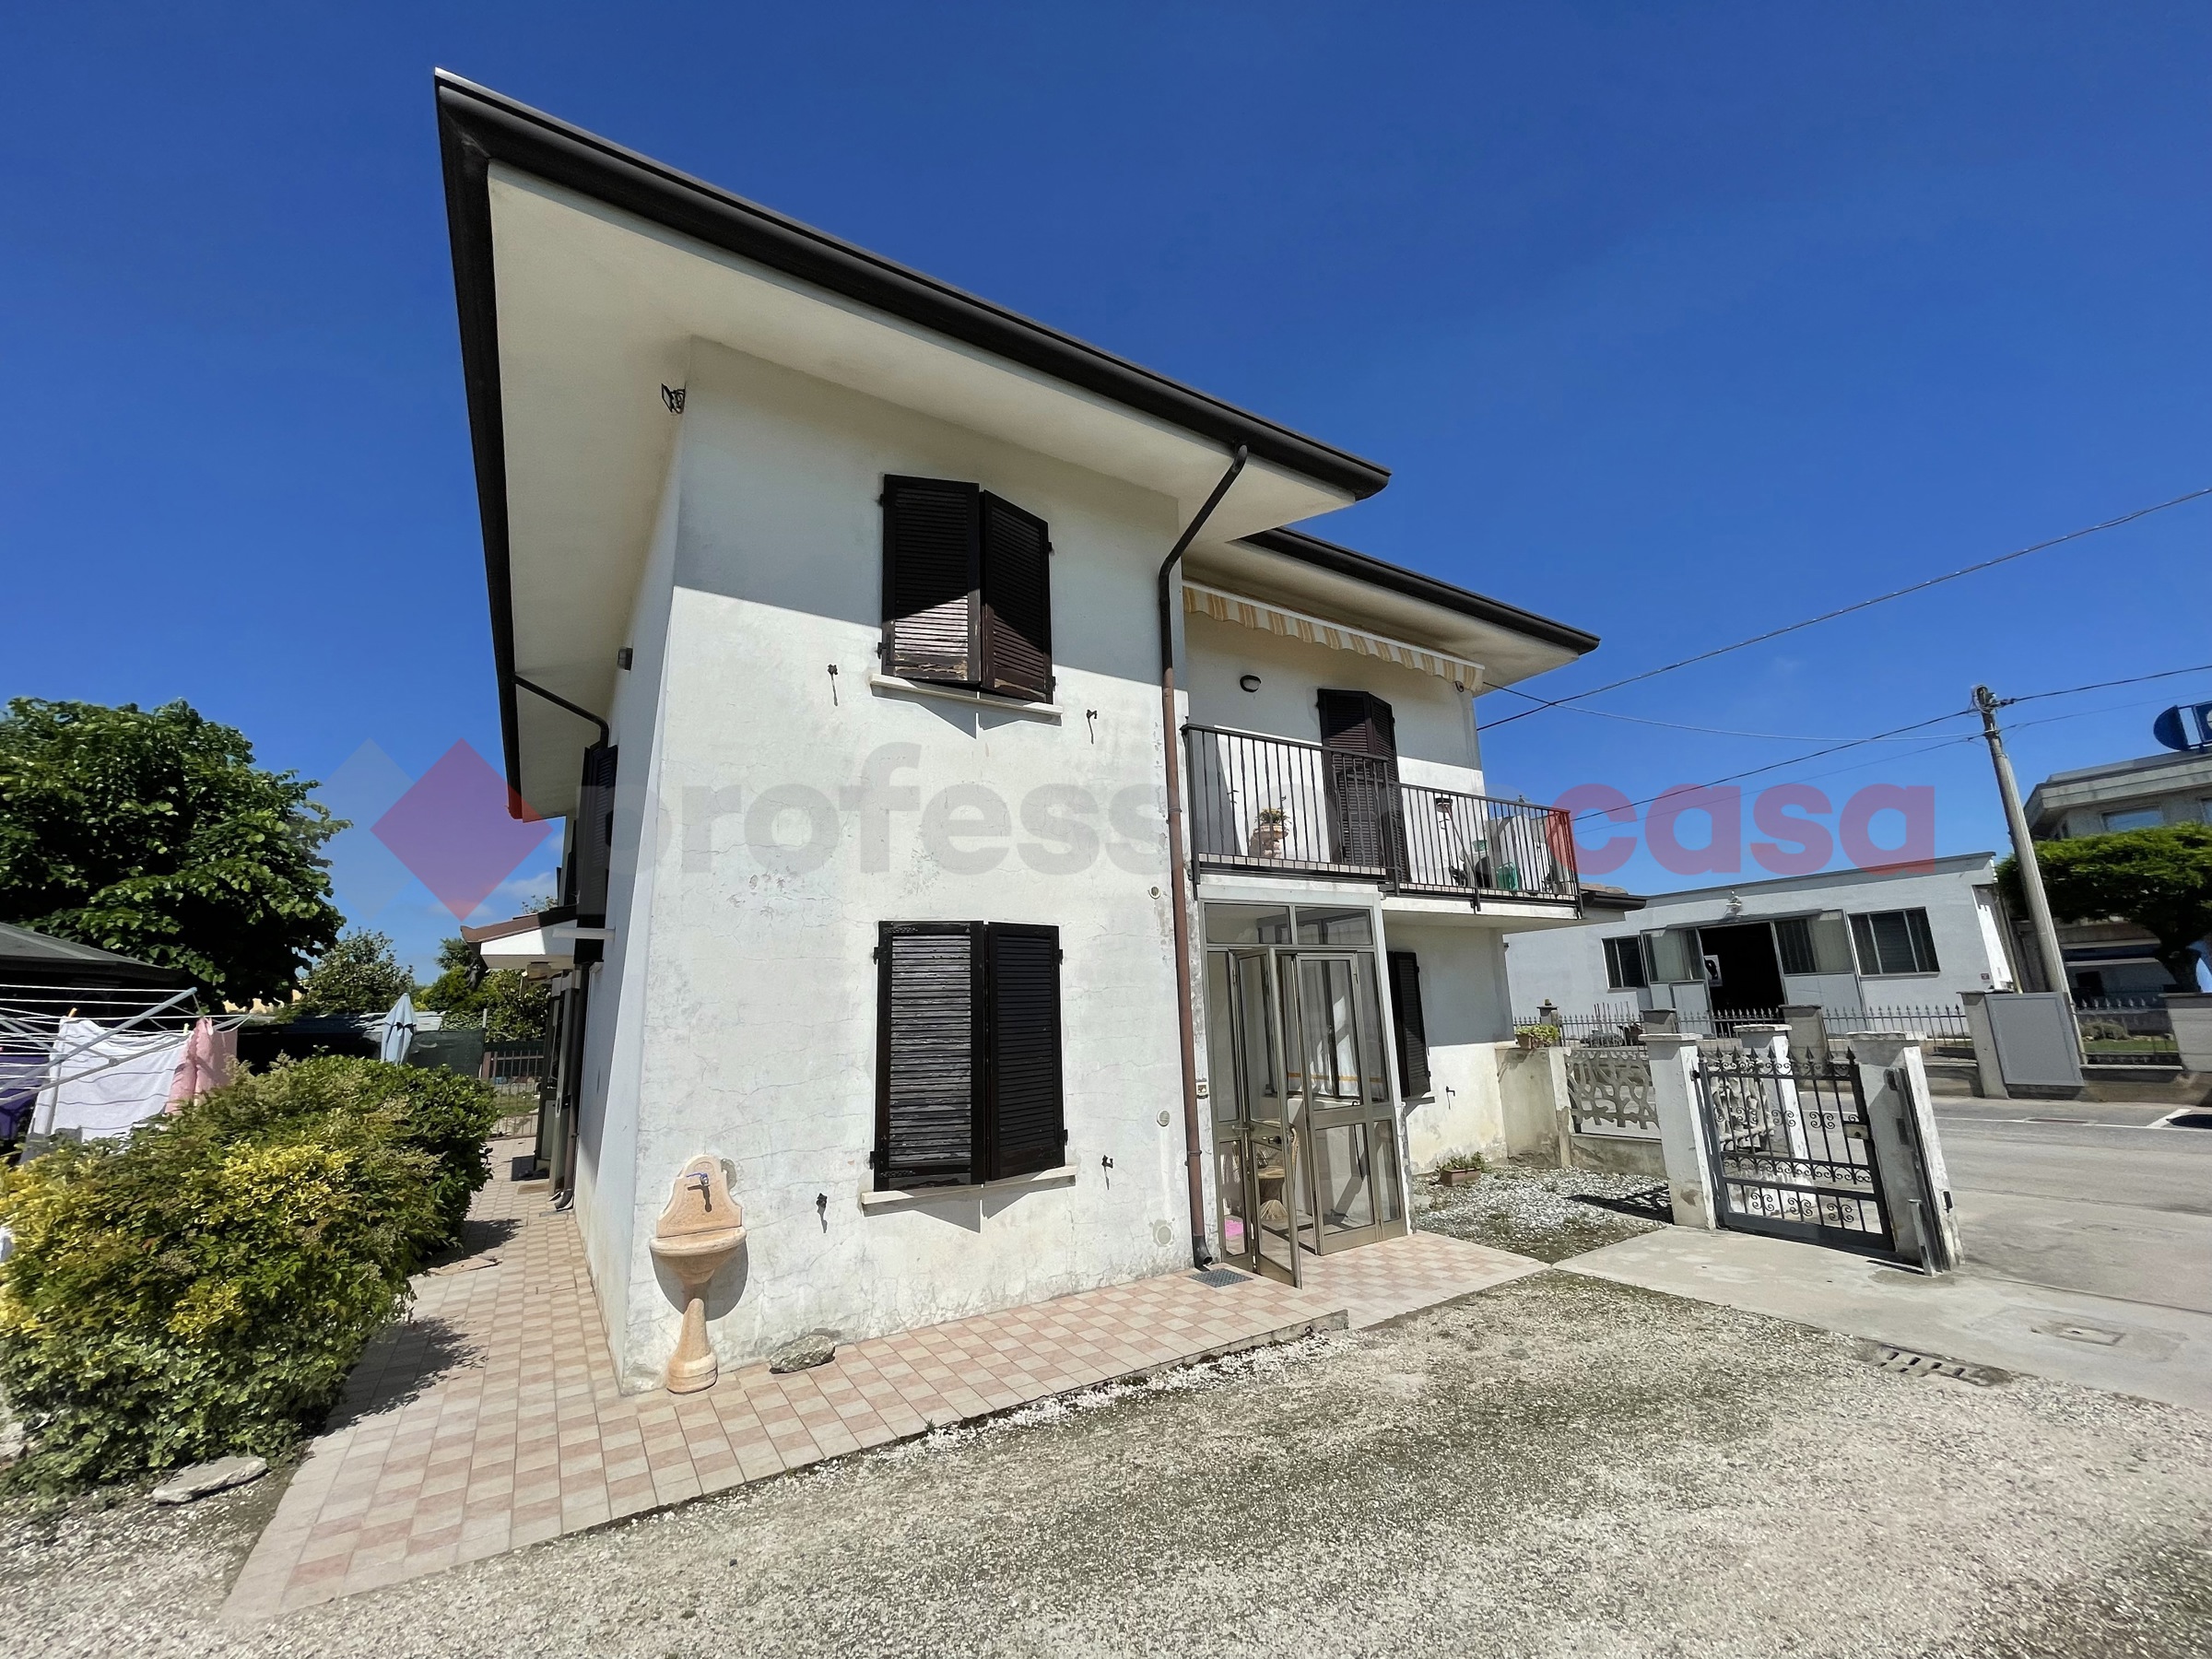 Casa indipendente in vendita a Boschi Sant'anna (VR)